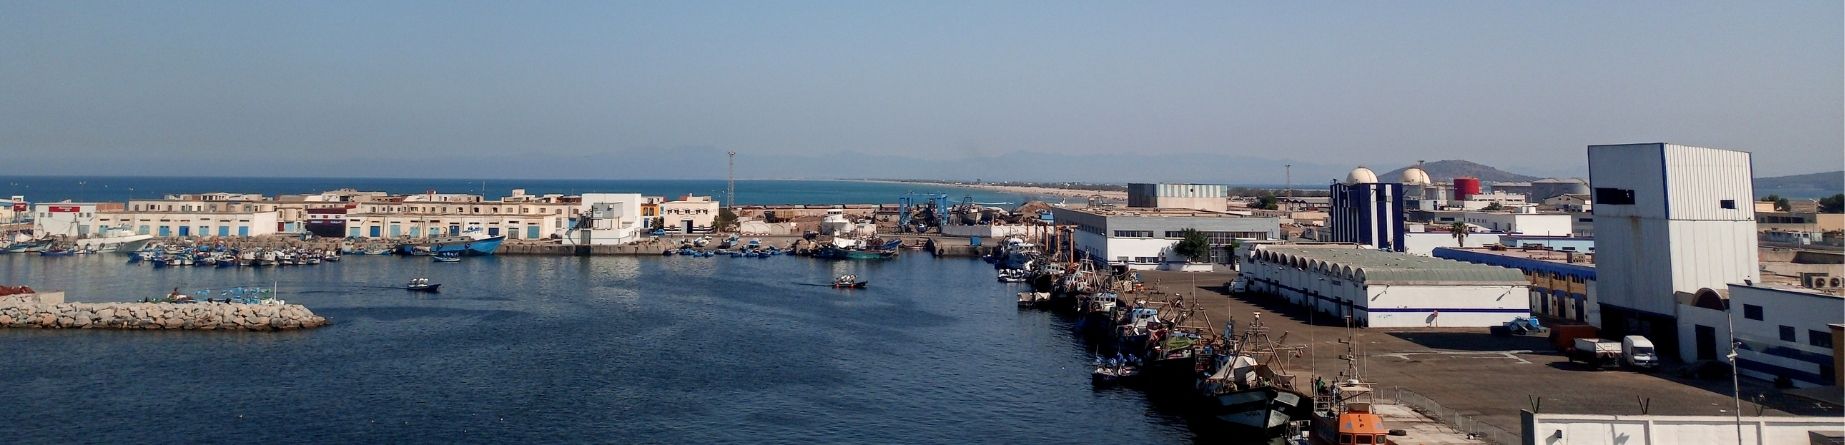 Immagine del porto di arrivo Nador per la rotta traghetto Sete - Nador